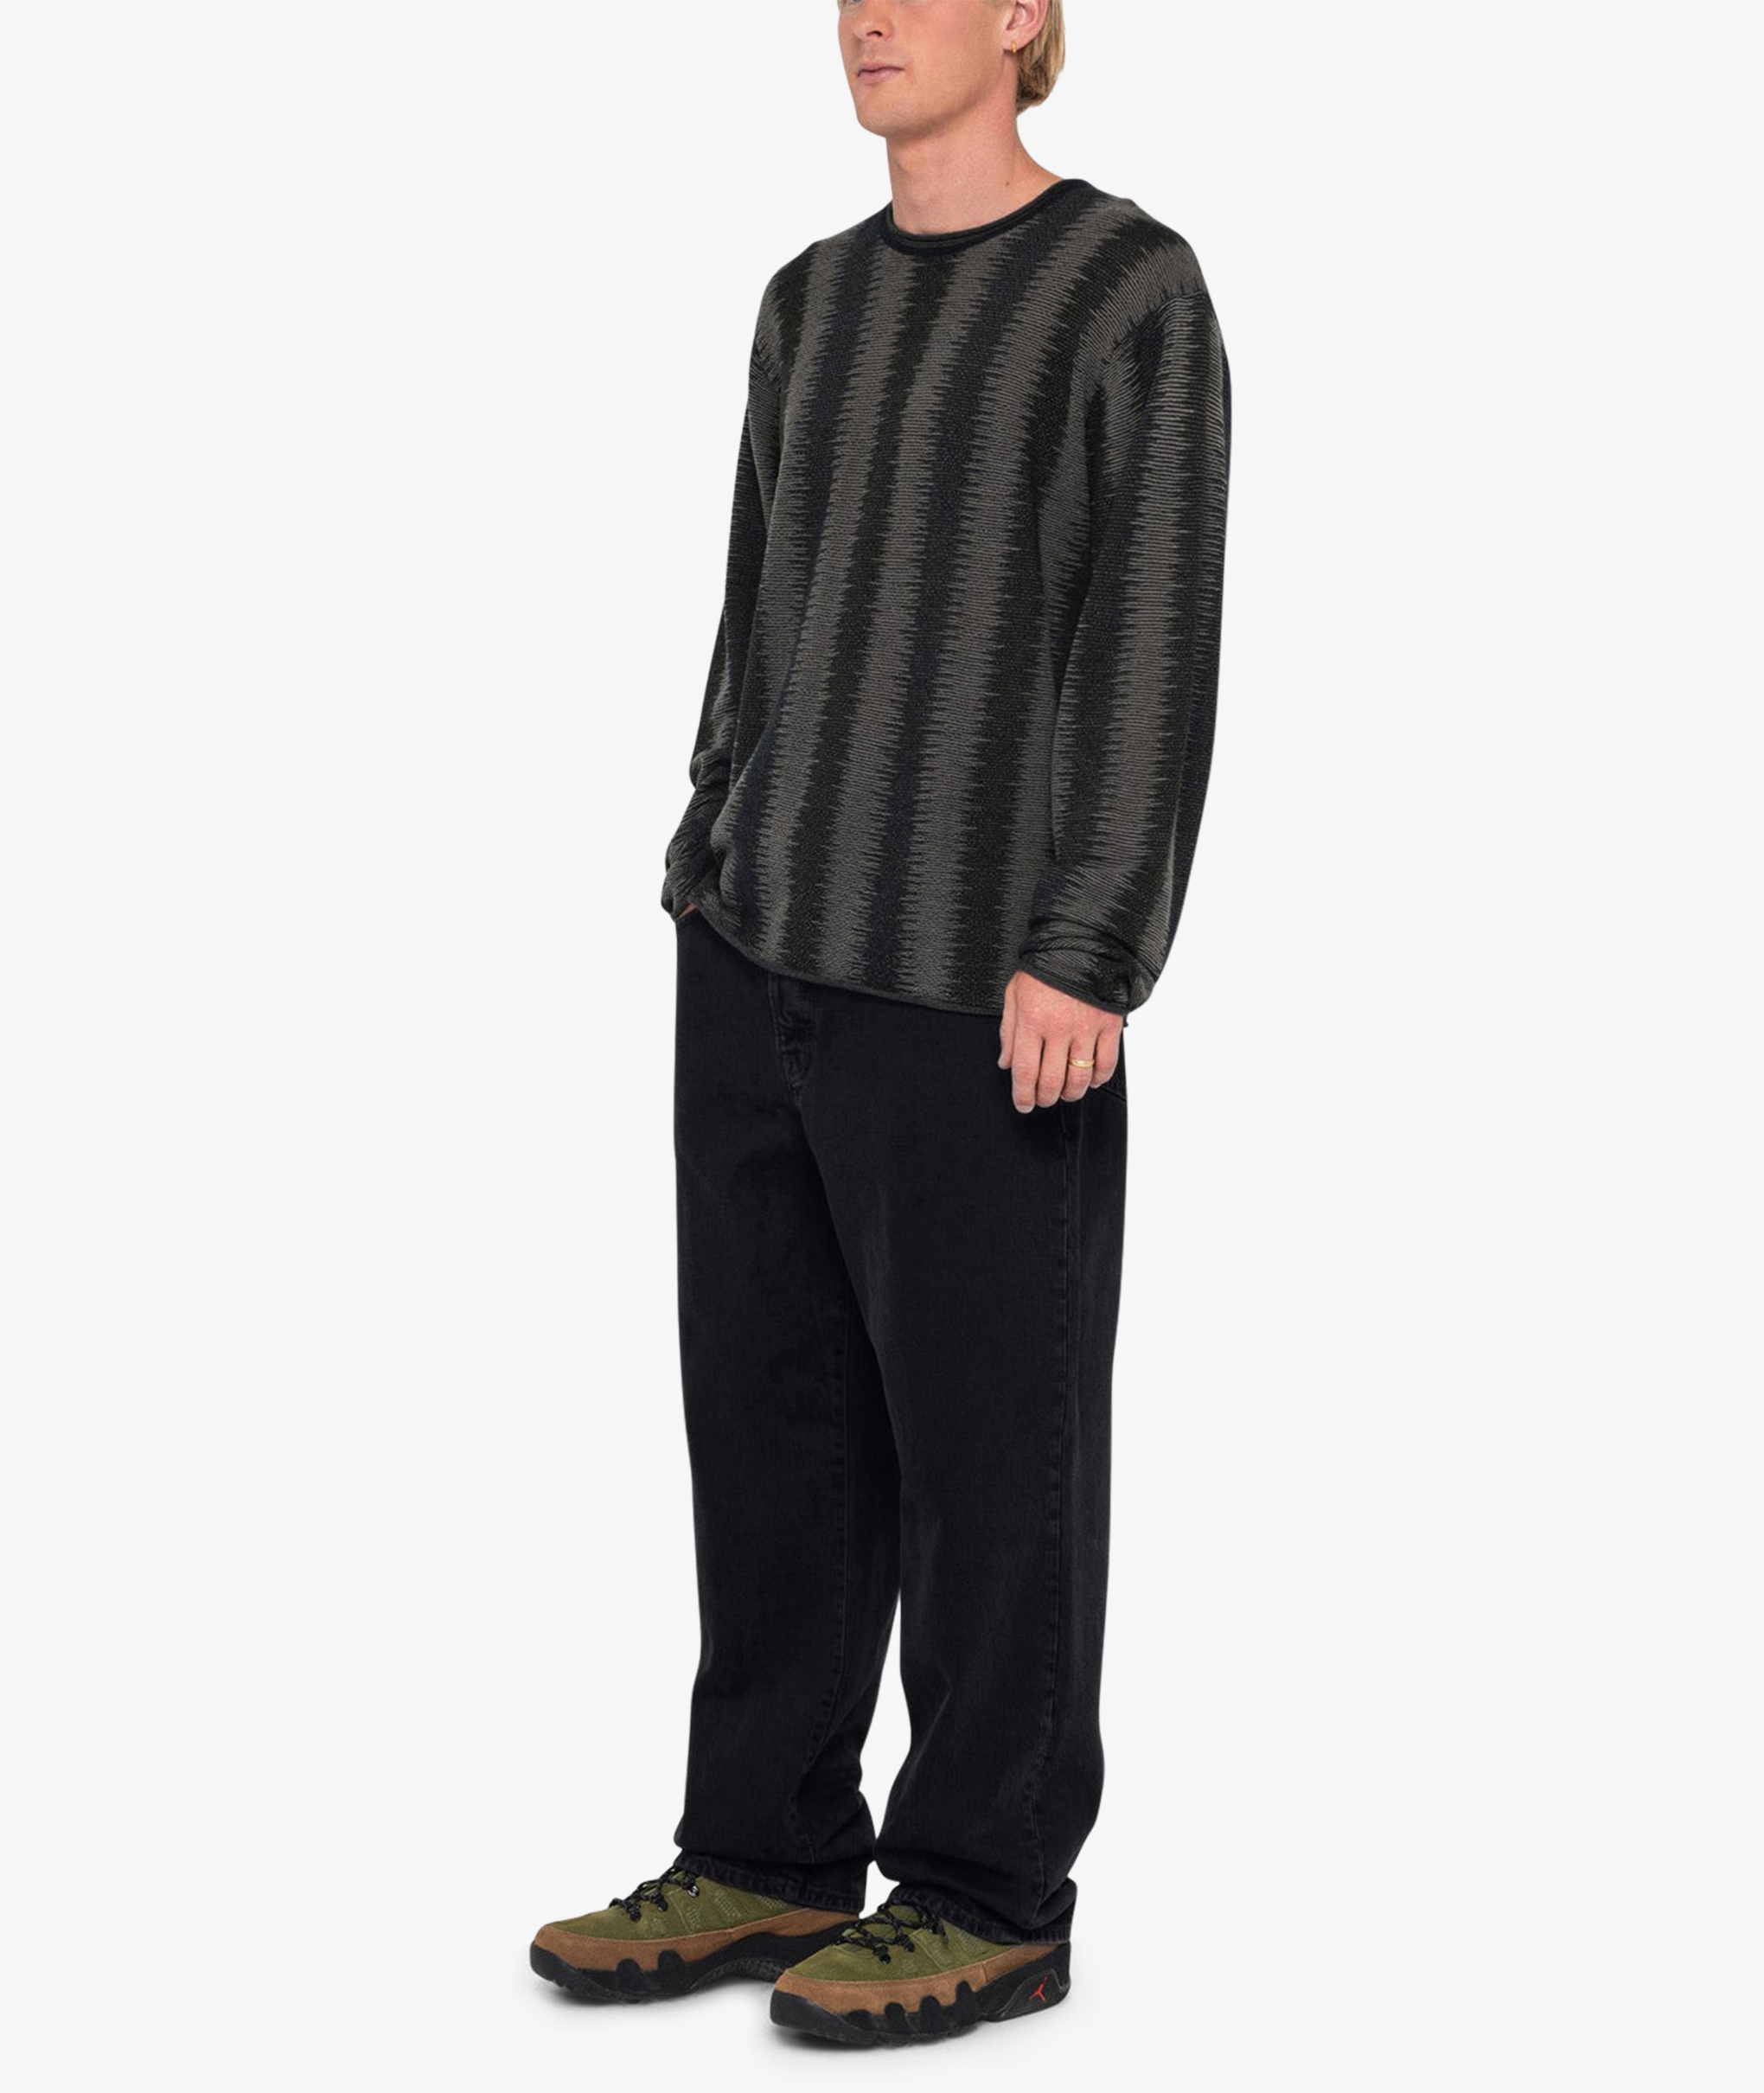 Norse Store   Shipping Worldwide   Stüssy Shadow Stripe Sweater